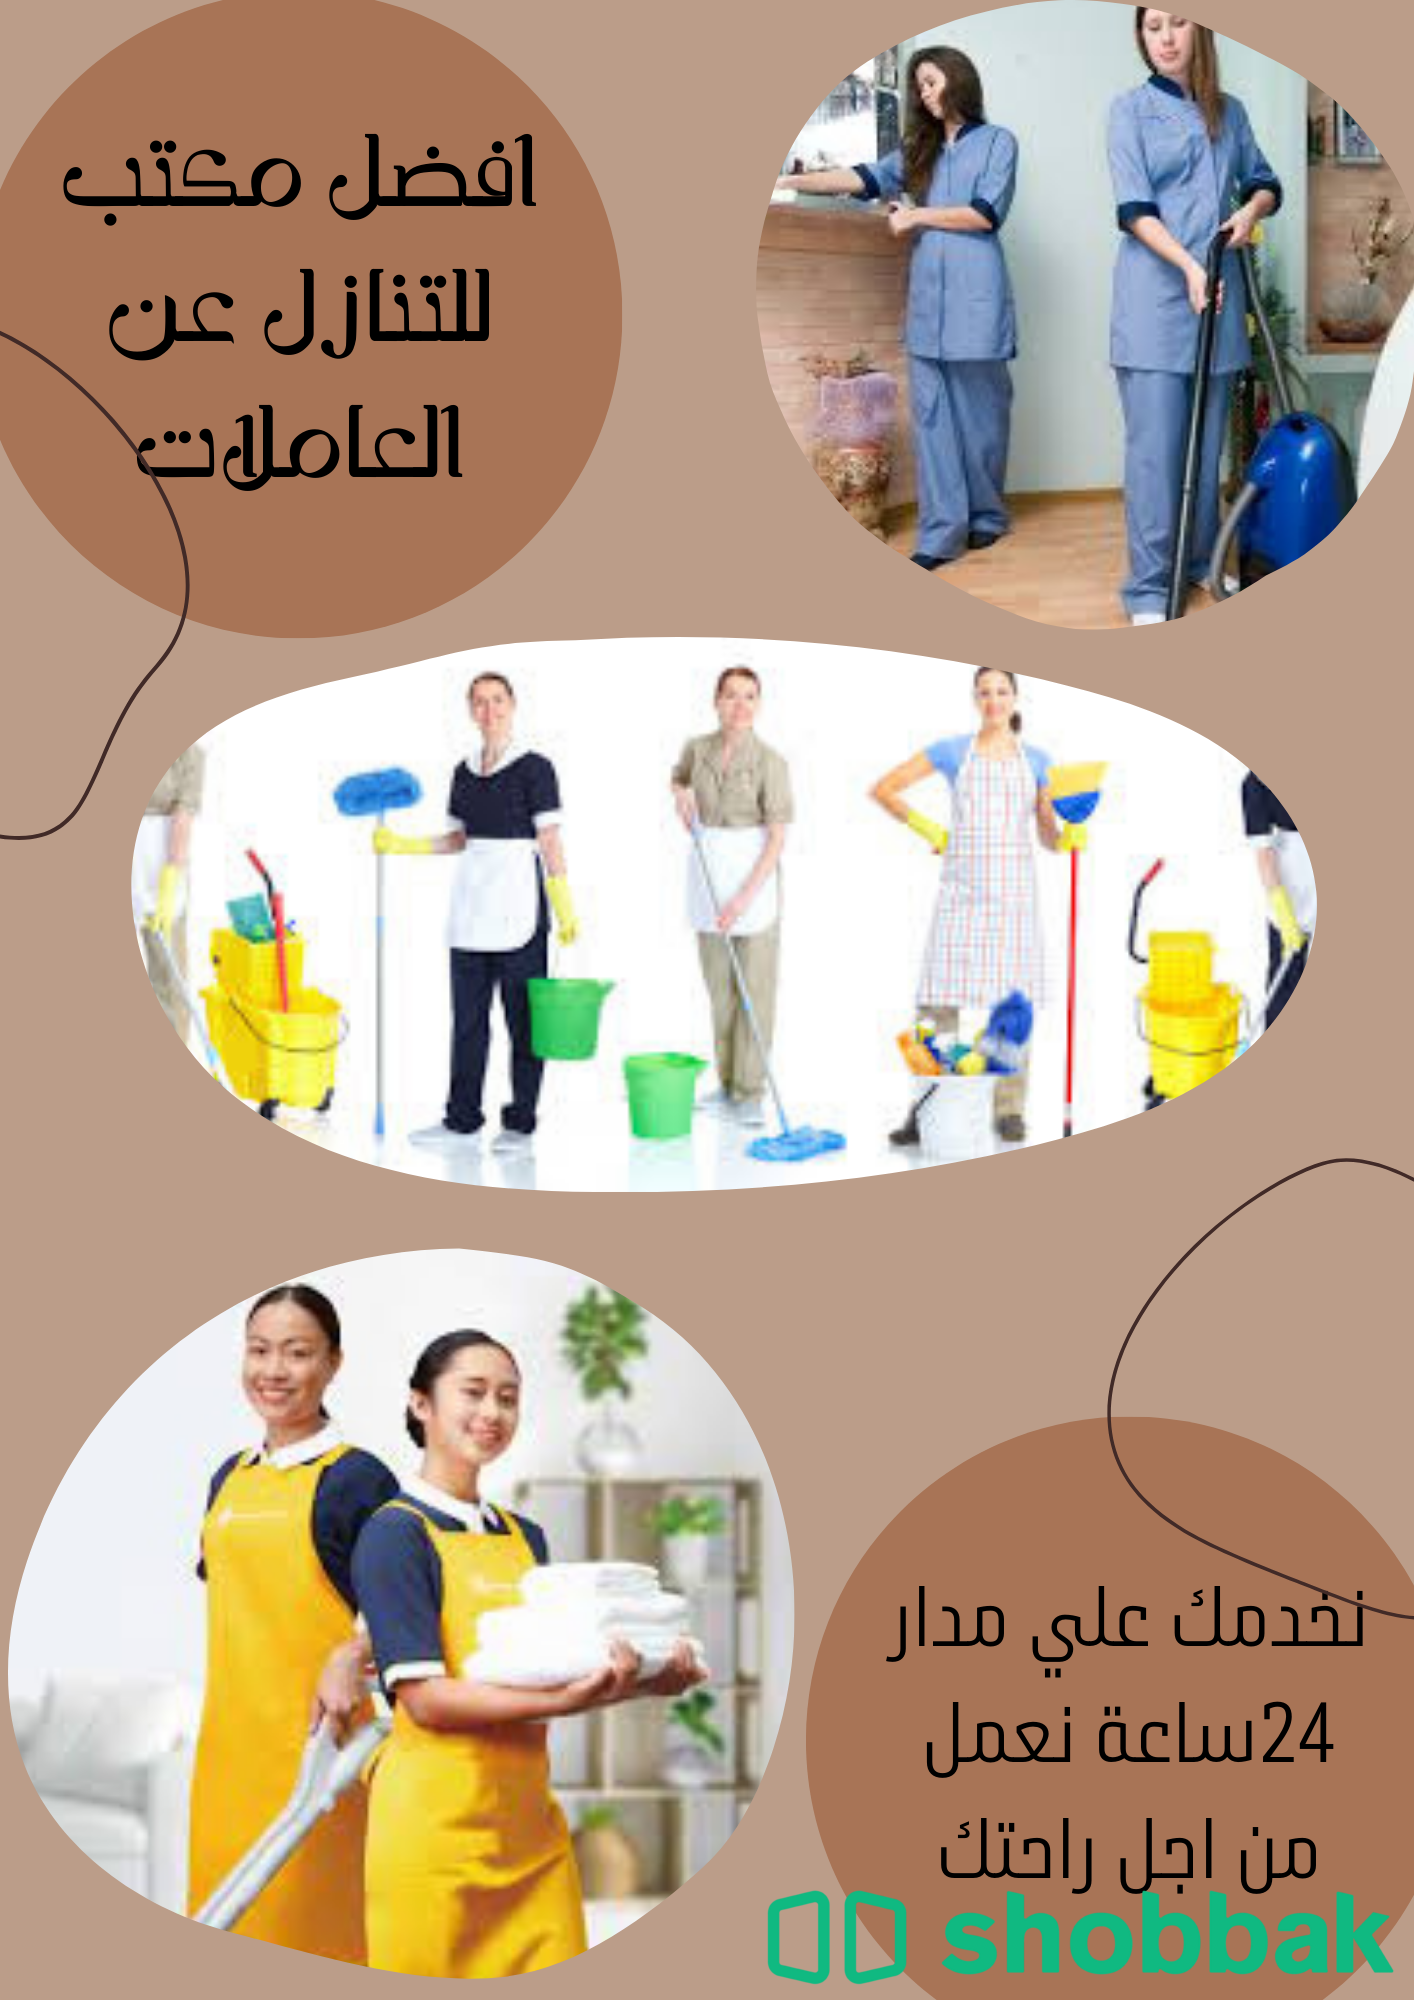 يوجد عاملات للتنازل من جميع الجنسيات 0560906197 شباك السعودية